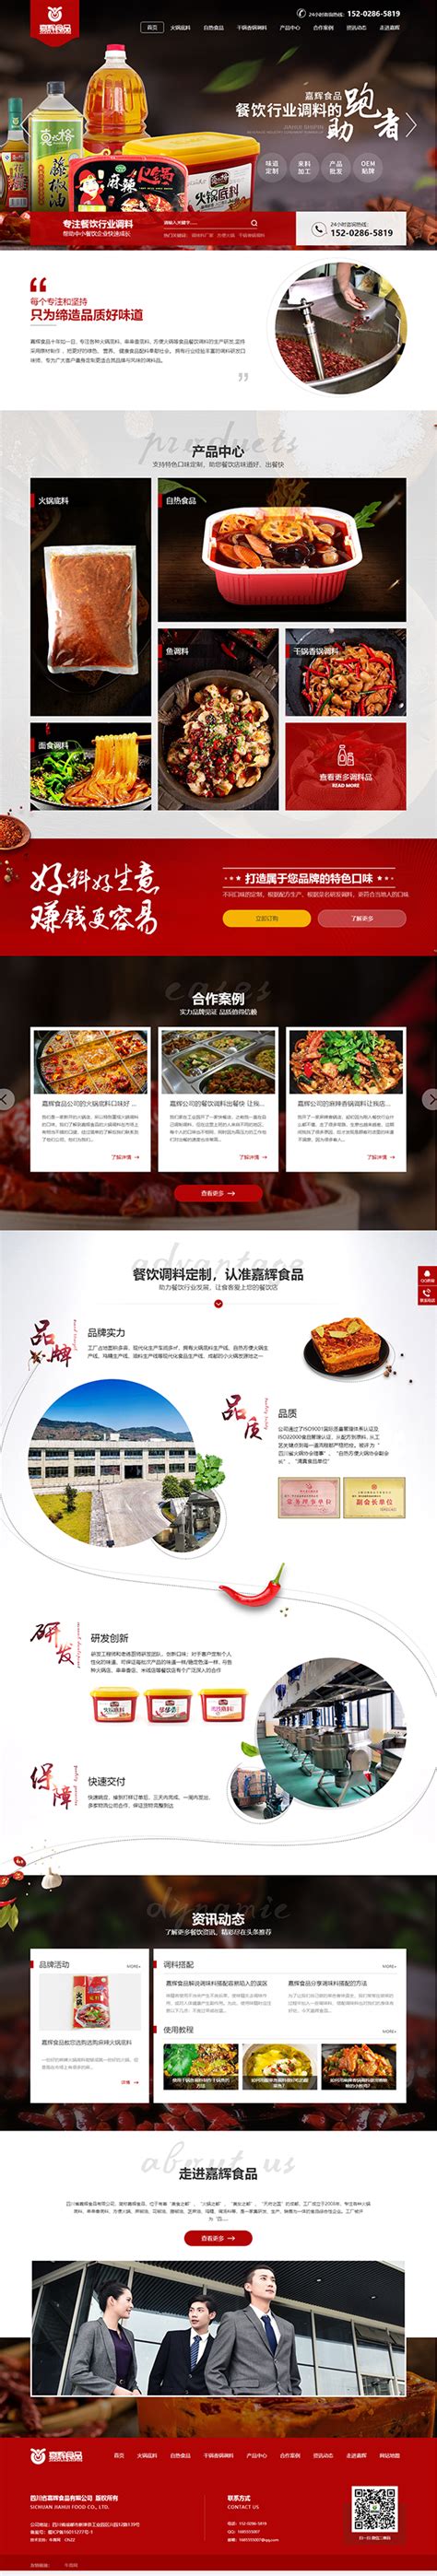 四川嘉辉食品-牛商网营销型网站案例展示